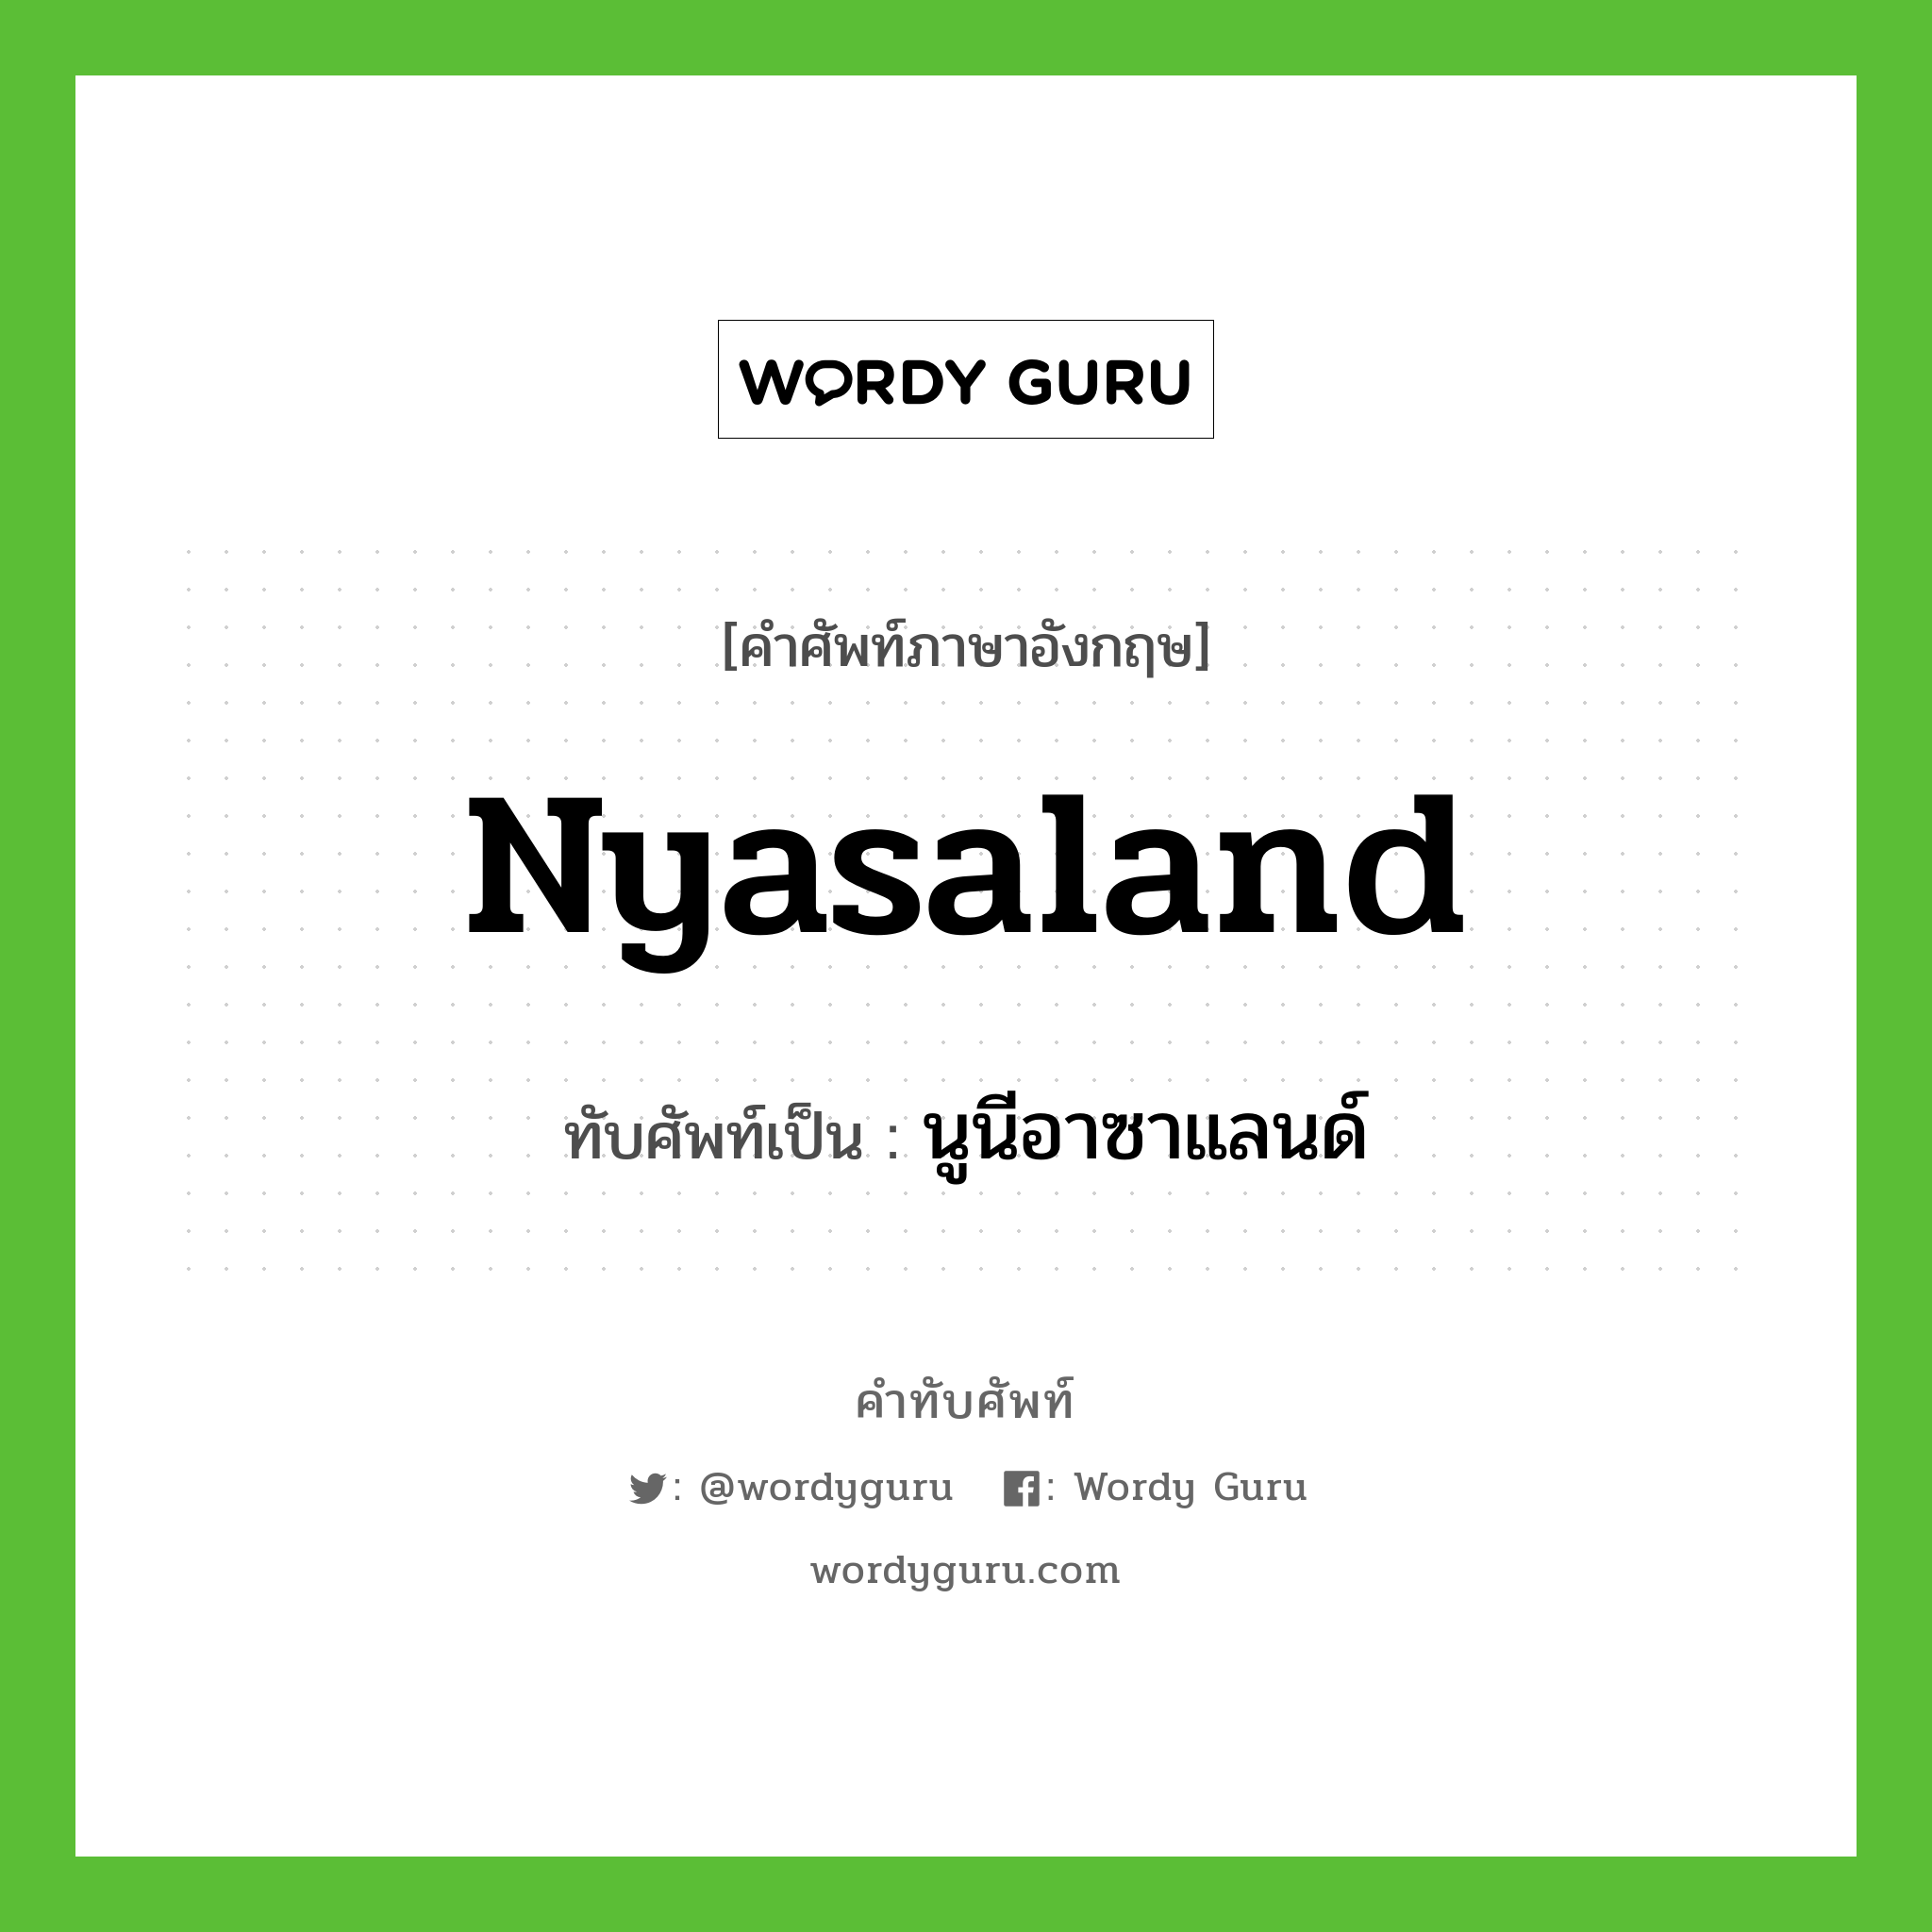 นูนีอาซาแลนด์ เขียนอย่างไร?, คำศัพท์ภาษาอังกฤษ นูนีอาซาแลนด์ ทับศัพท์เป็น Nyasaland